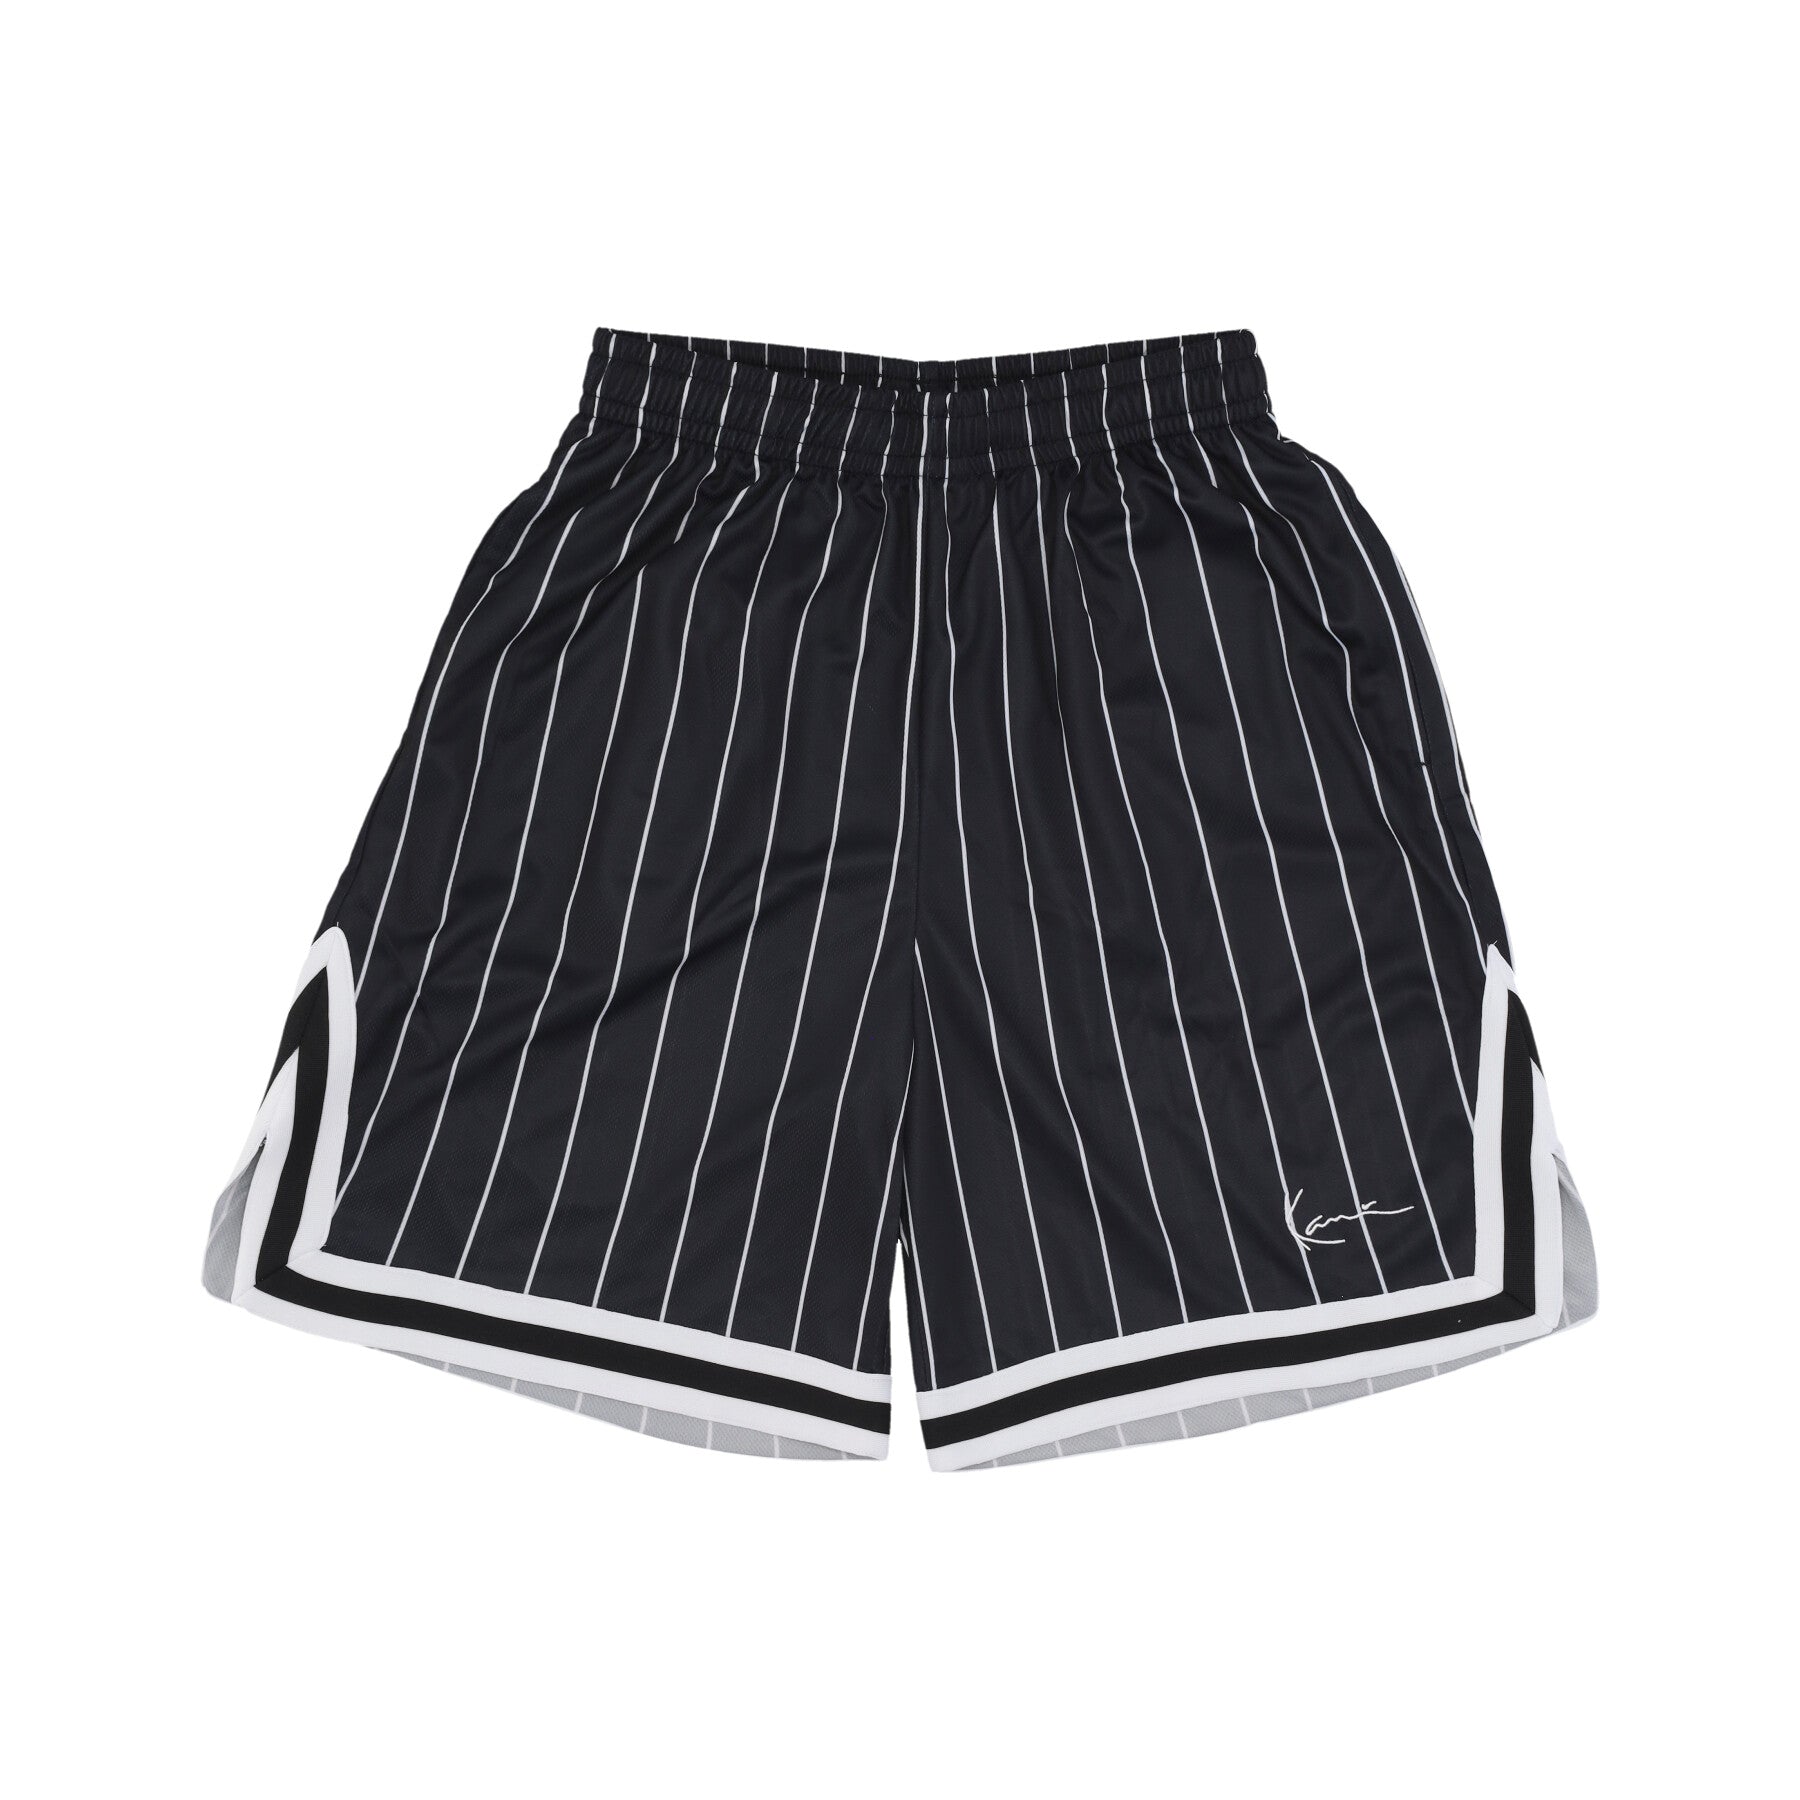 Pantaloncino Tipo Basket Uomo Pinstripe Mesh Shorts Black/white 6014920